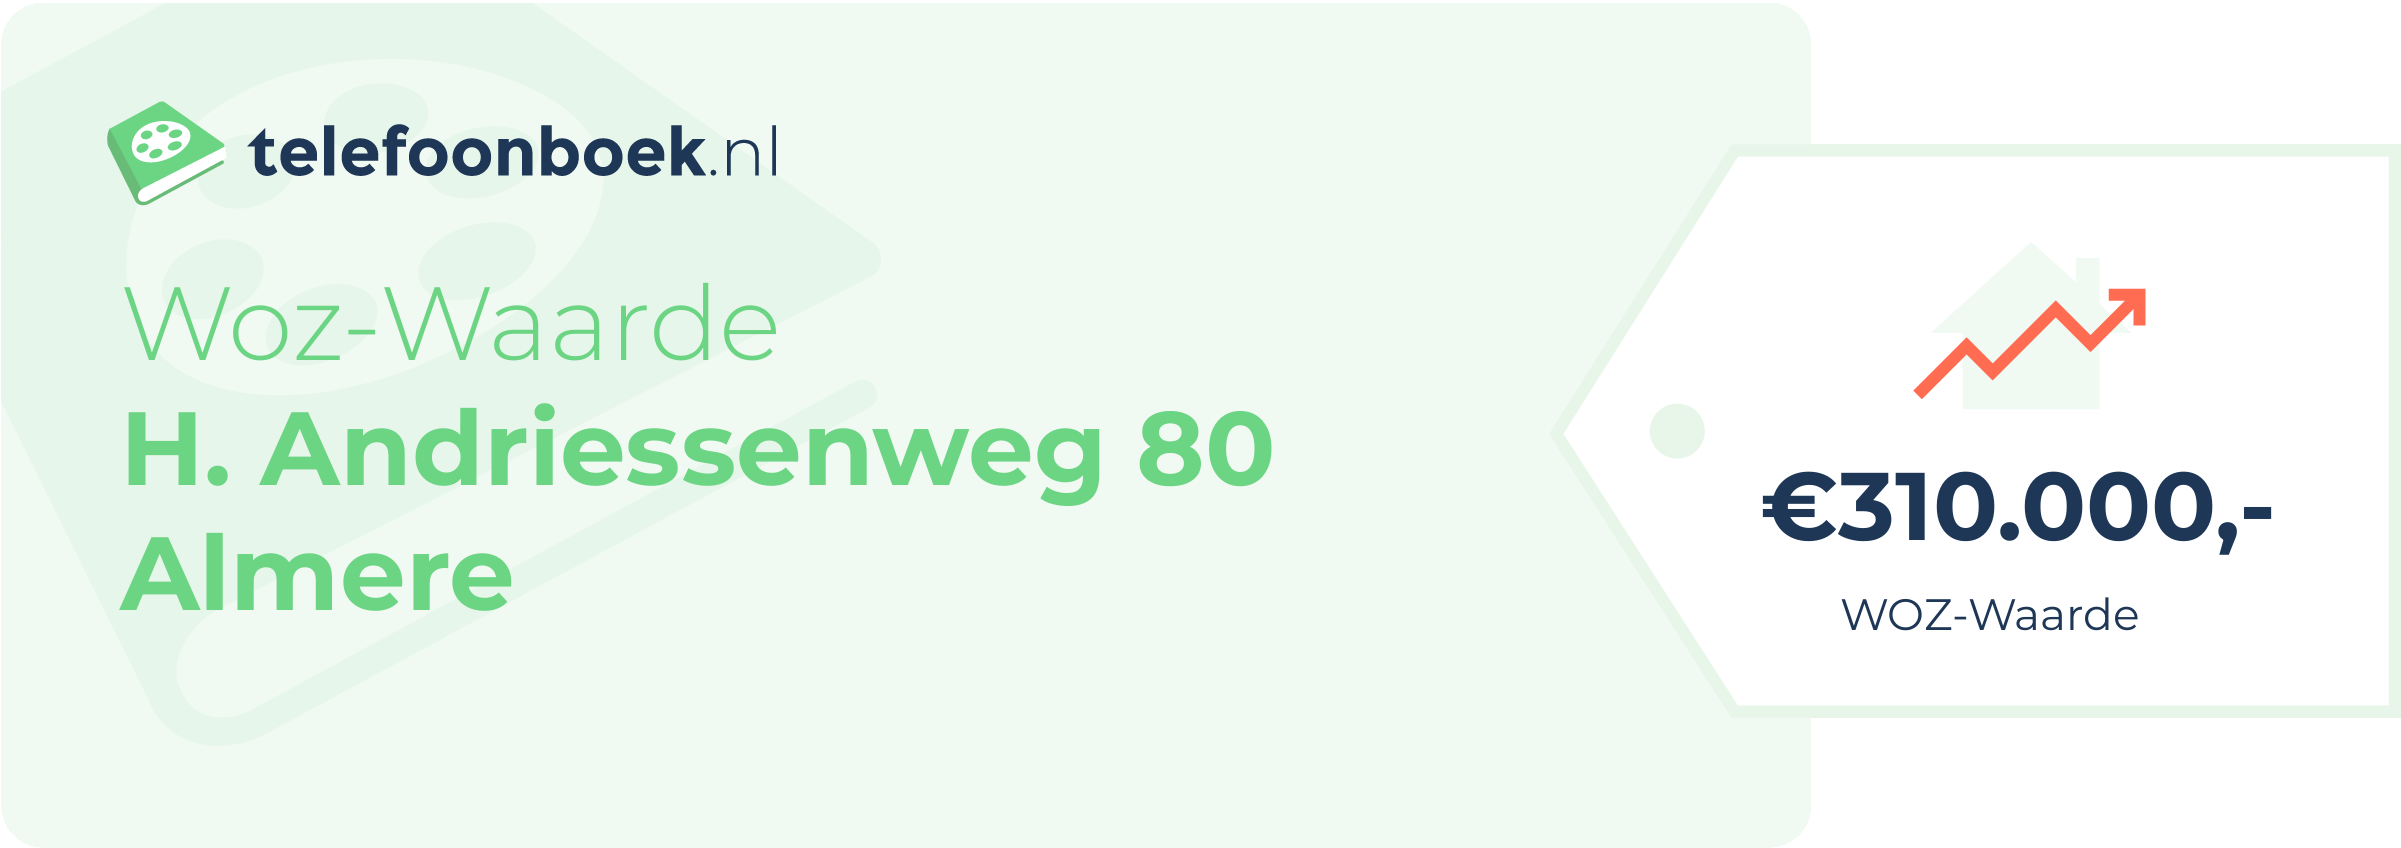 WOZ-waarde H. Andriessenweg 80 Almere